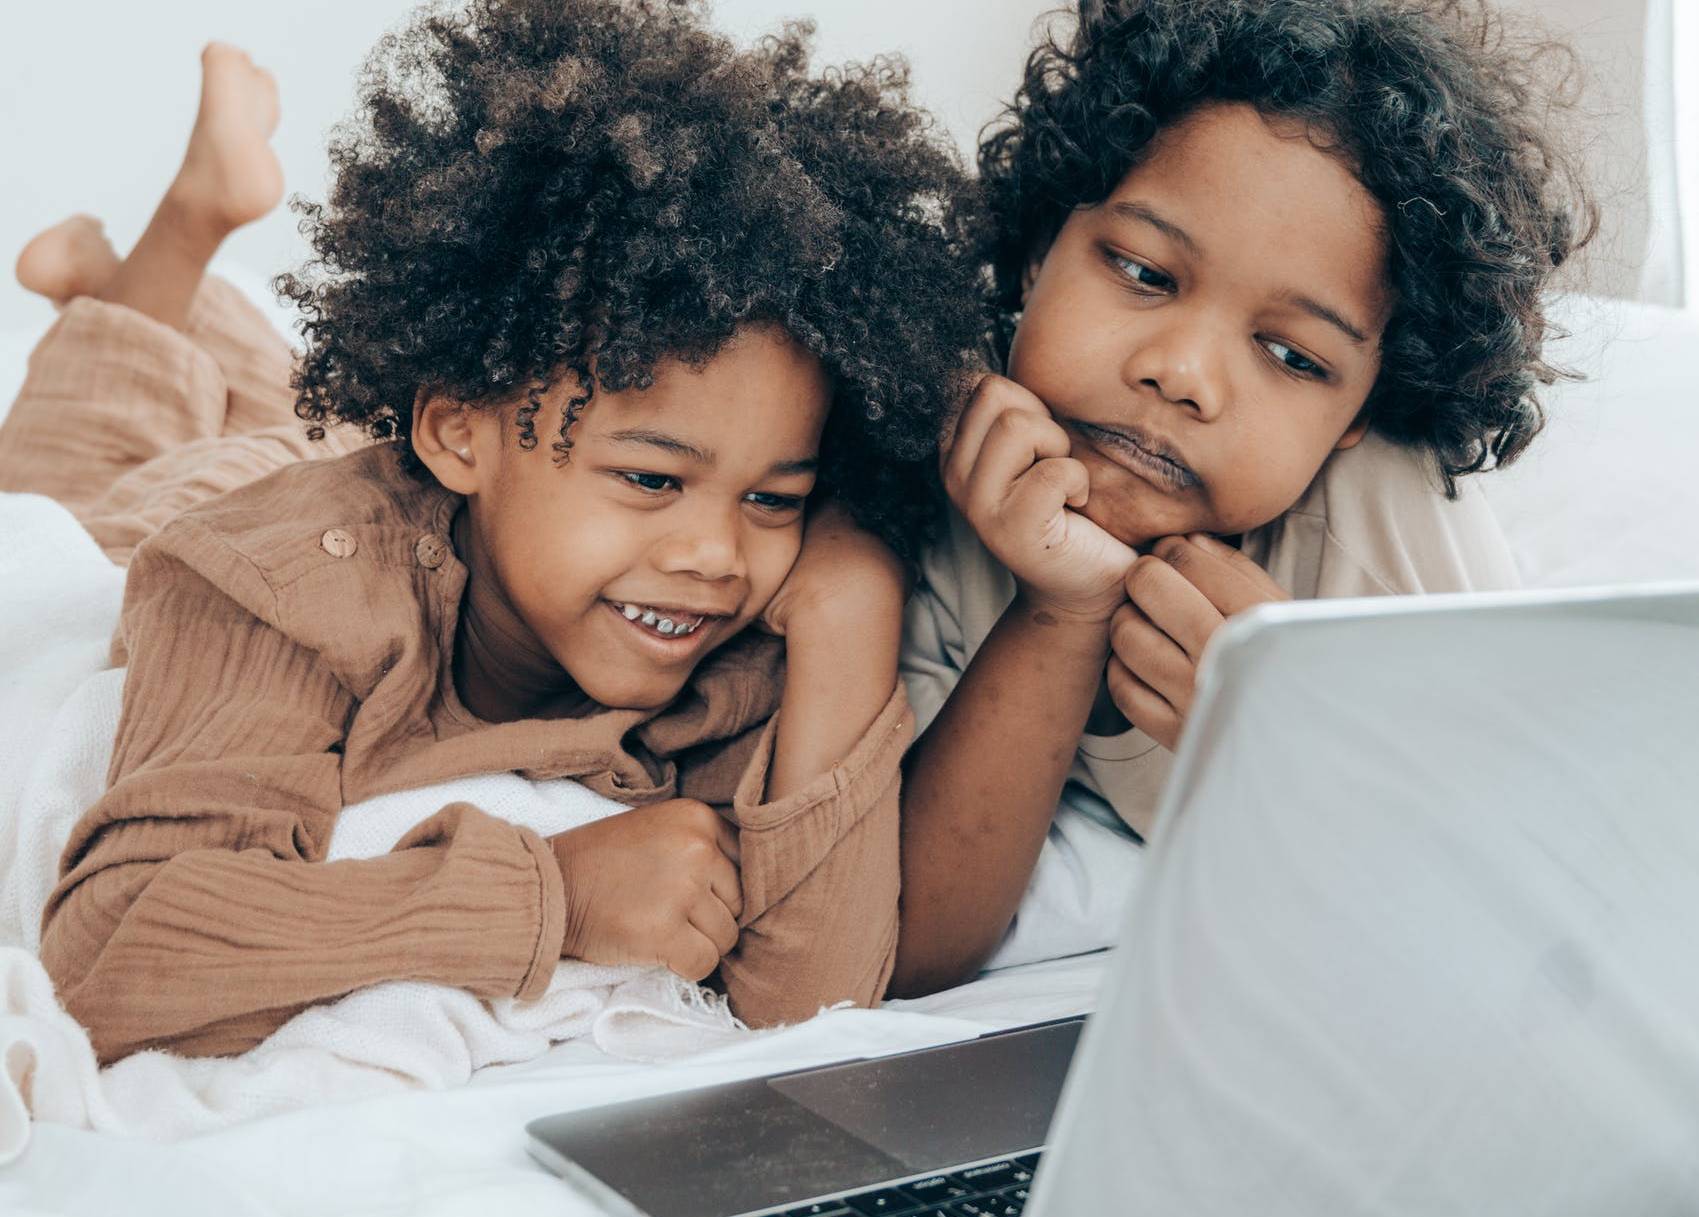 Deux enfants regardent un écran d'ordinateur portable.